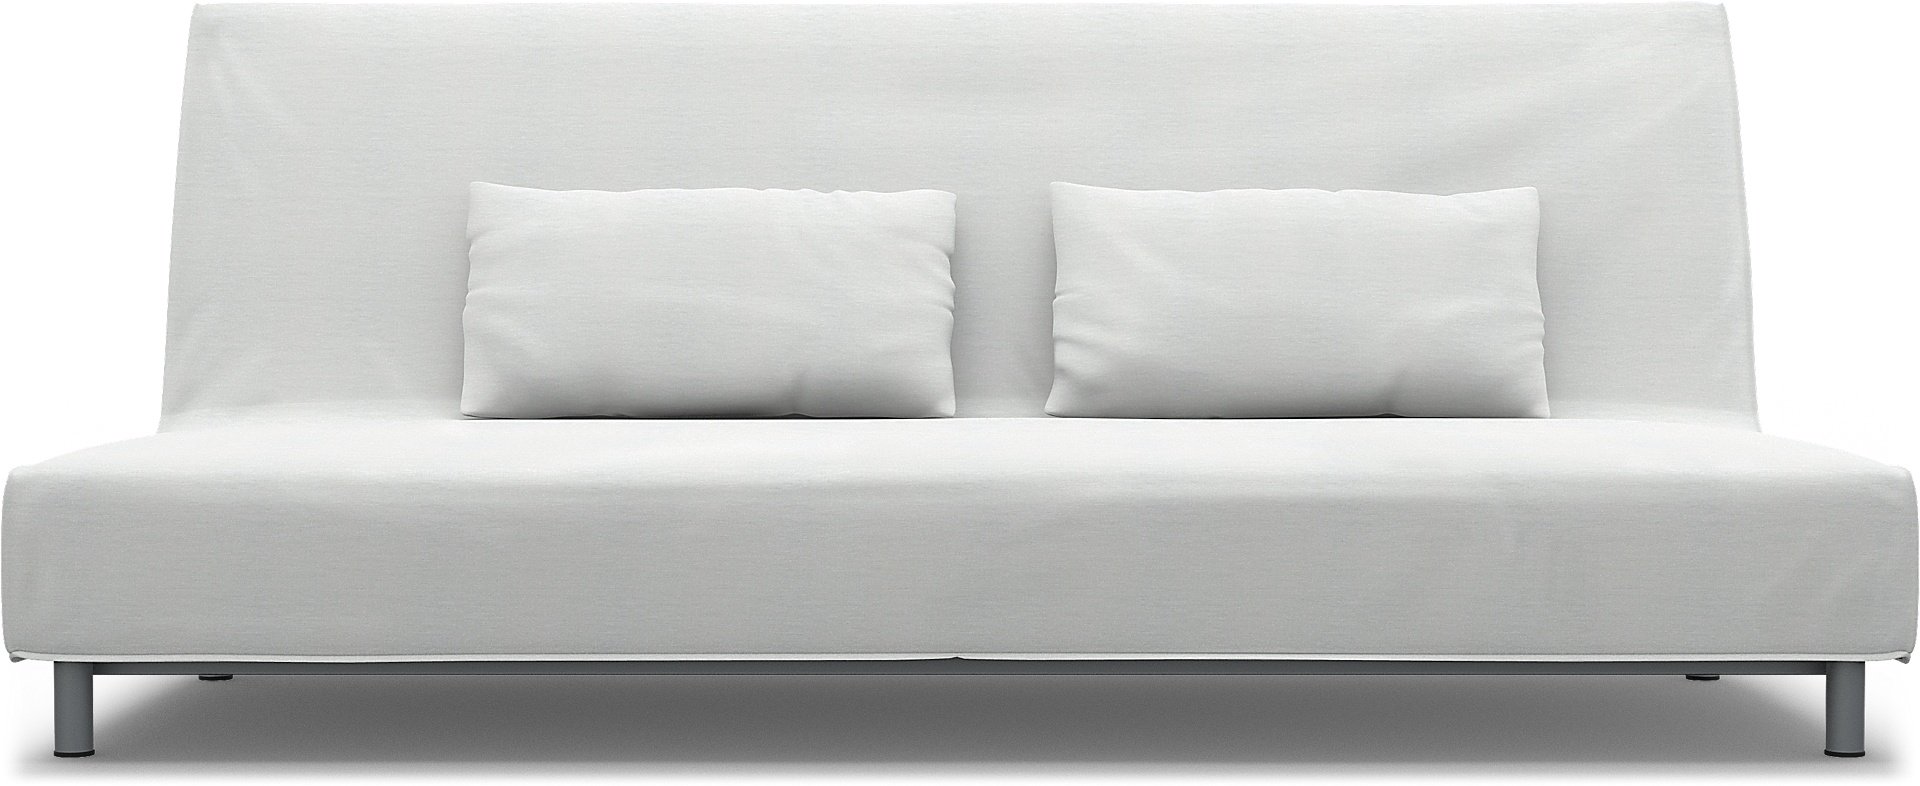 IKEA - Beddinge Sofa Bed Cover, White, Linen - Bemz